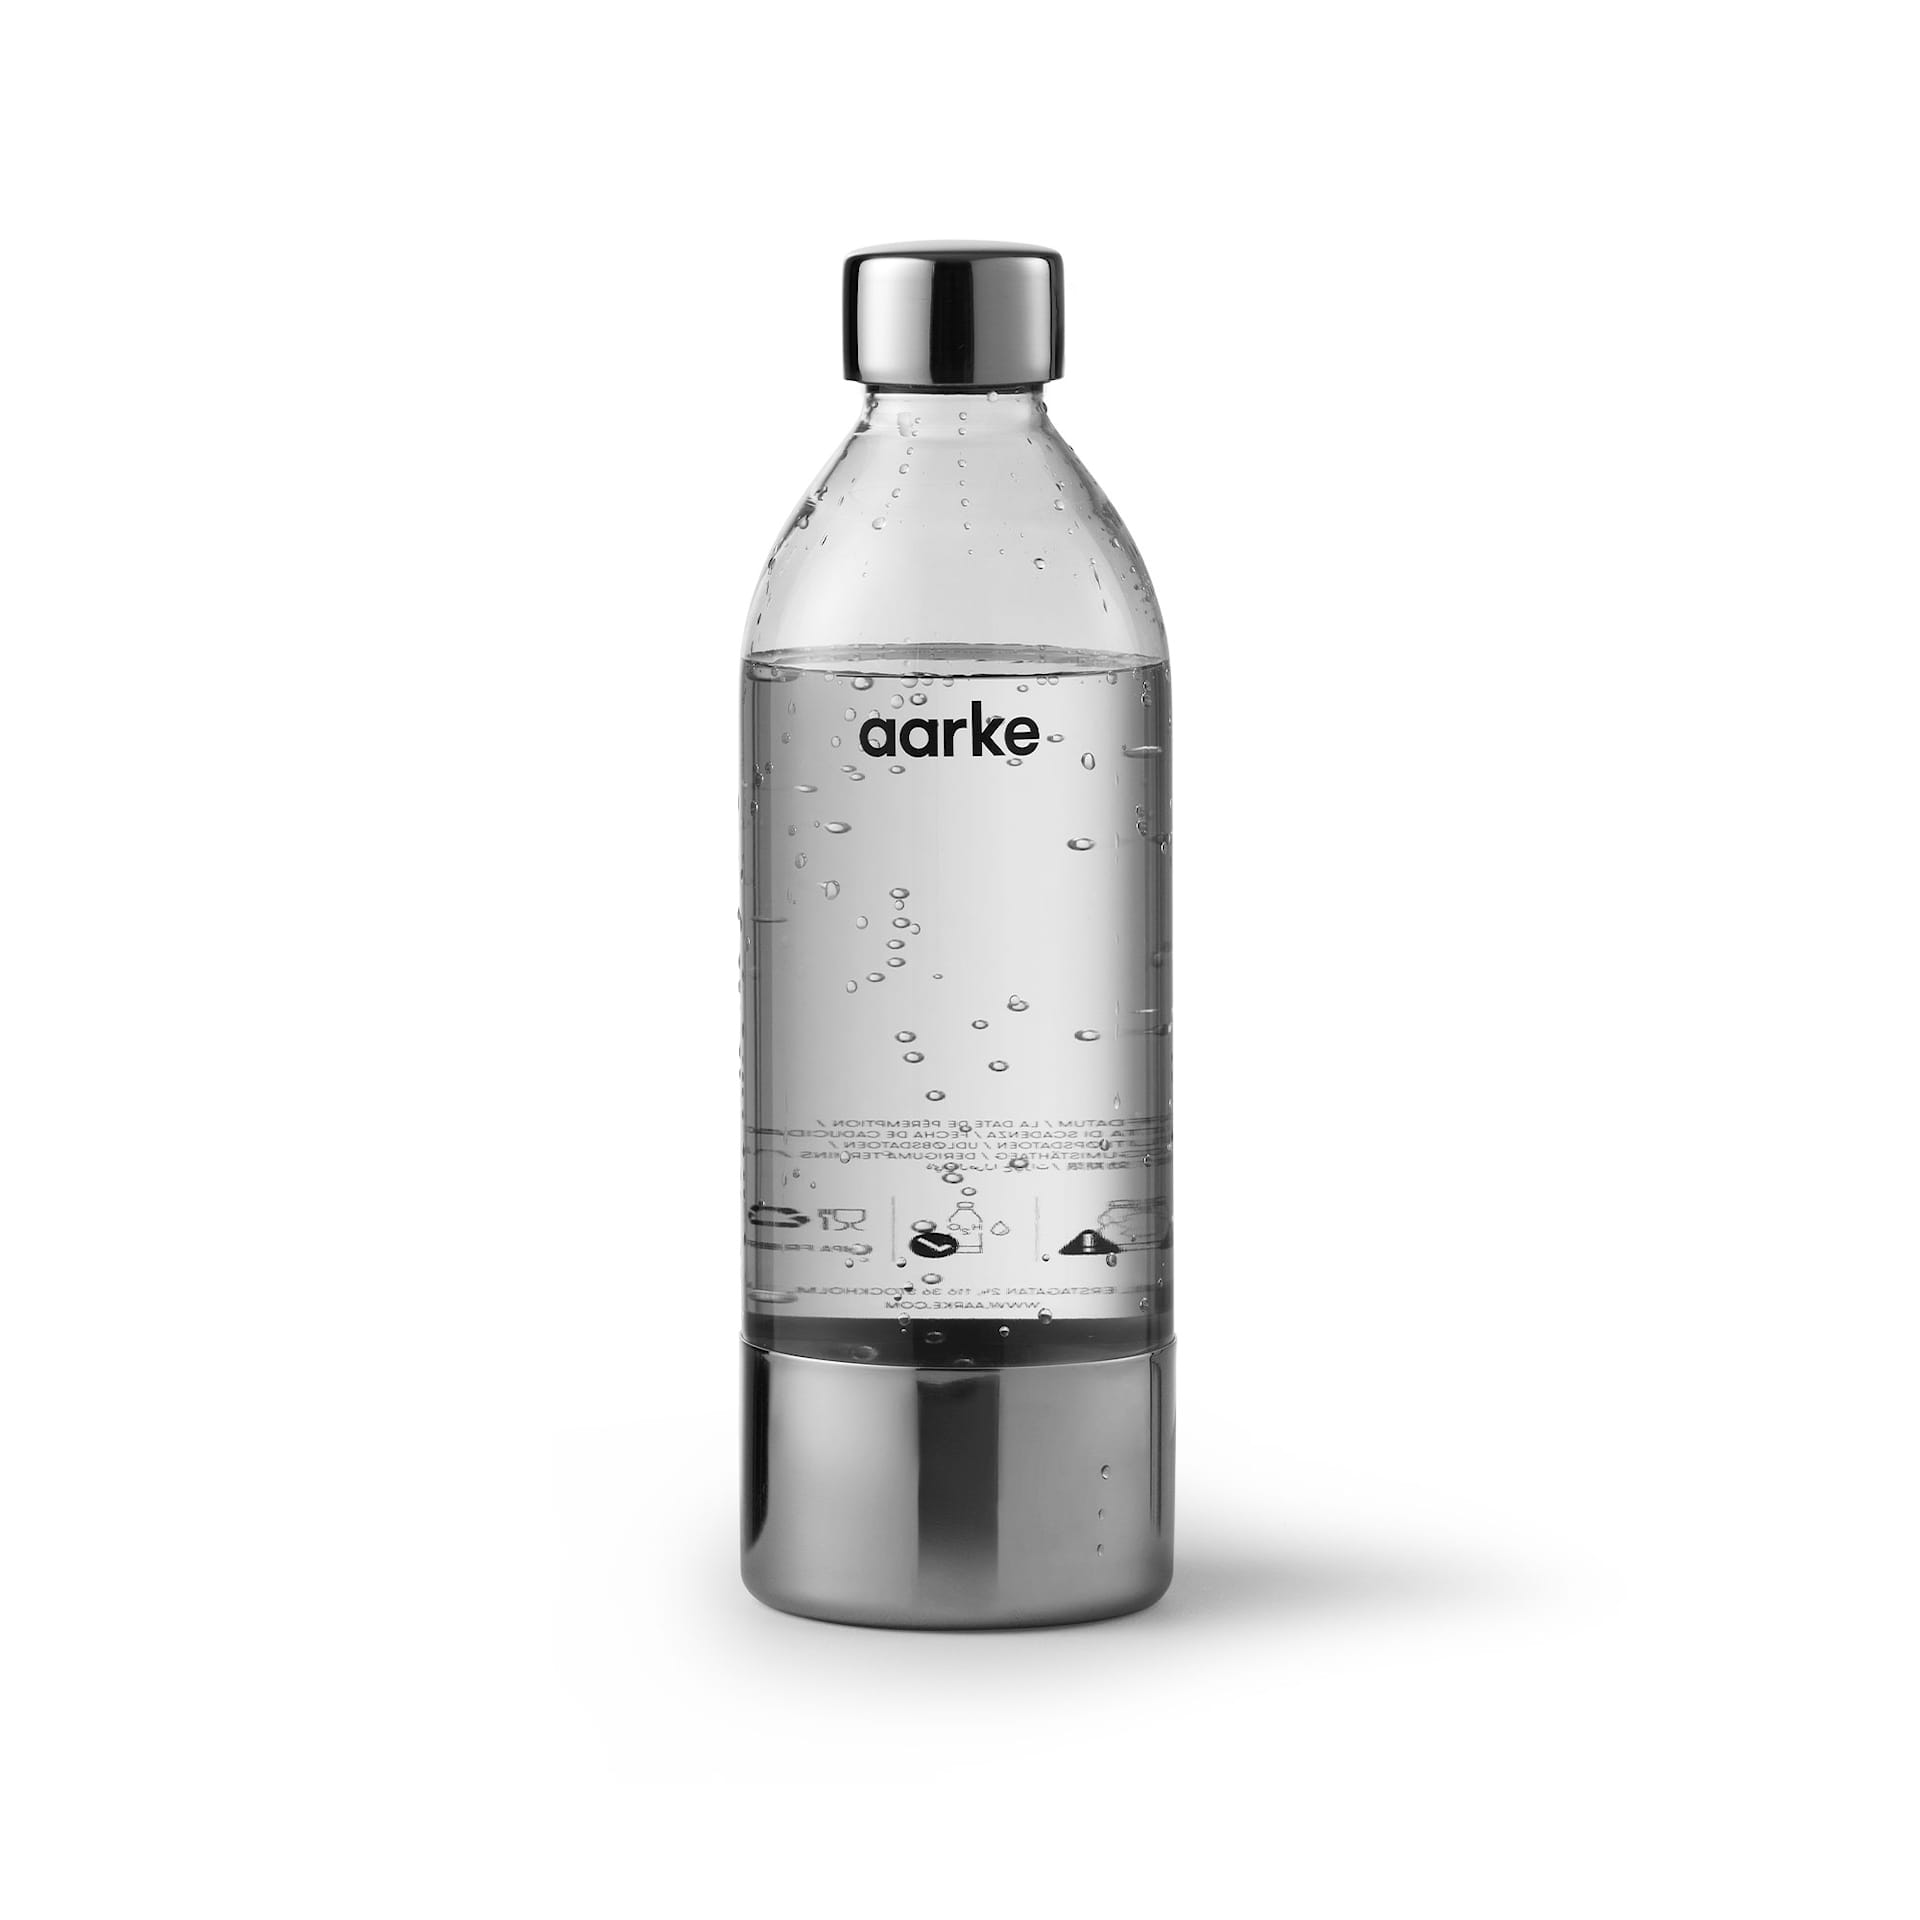 Aarke PET-flaske - Aarke - NO GA